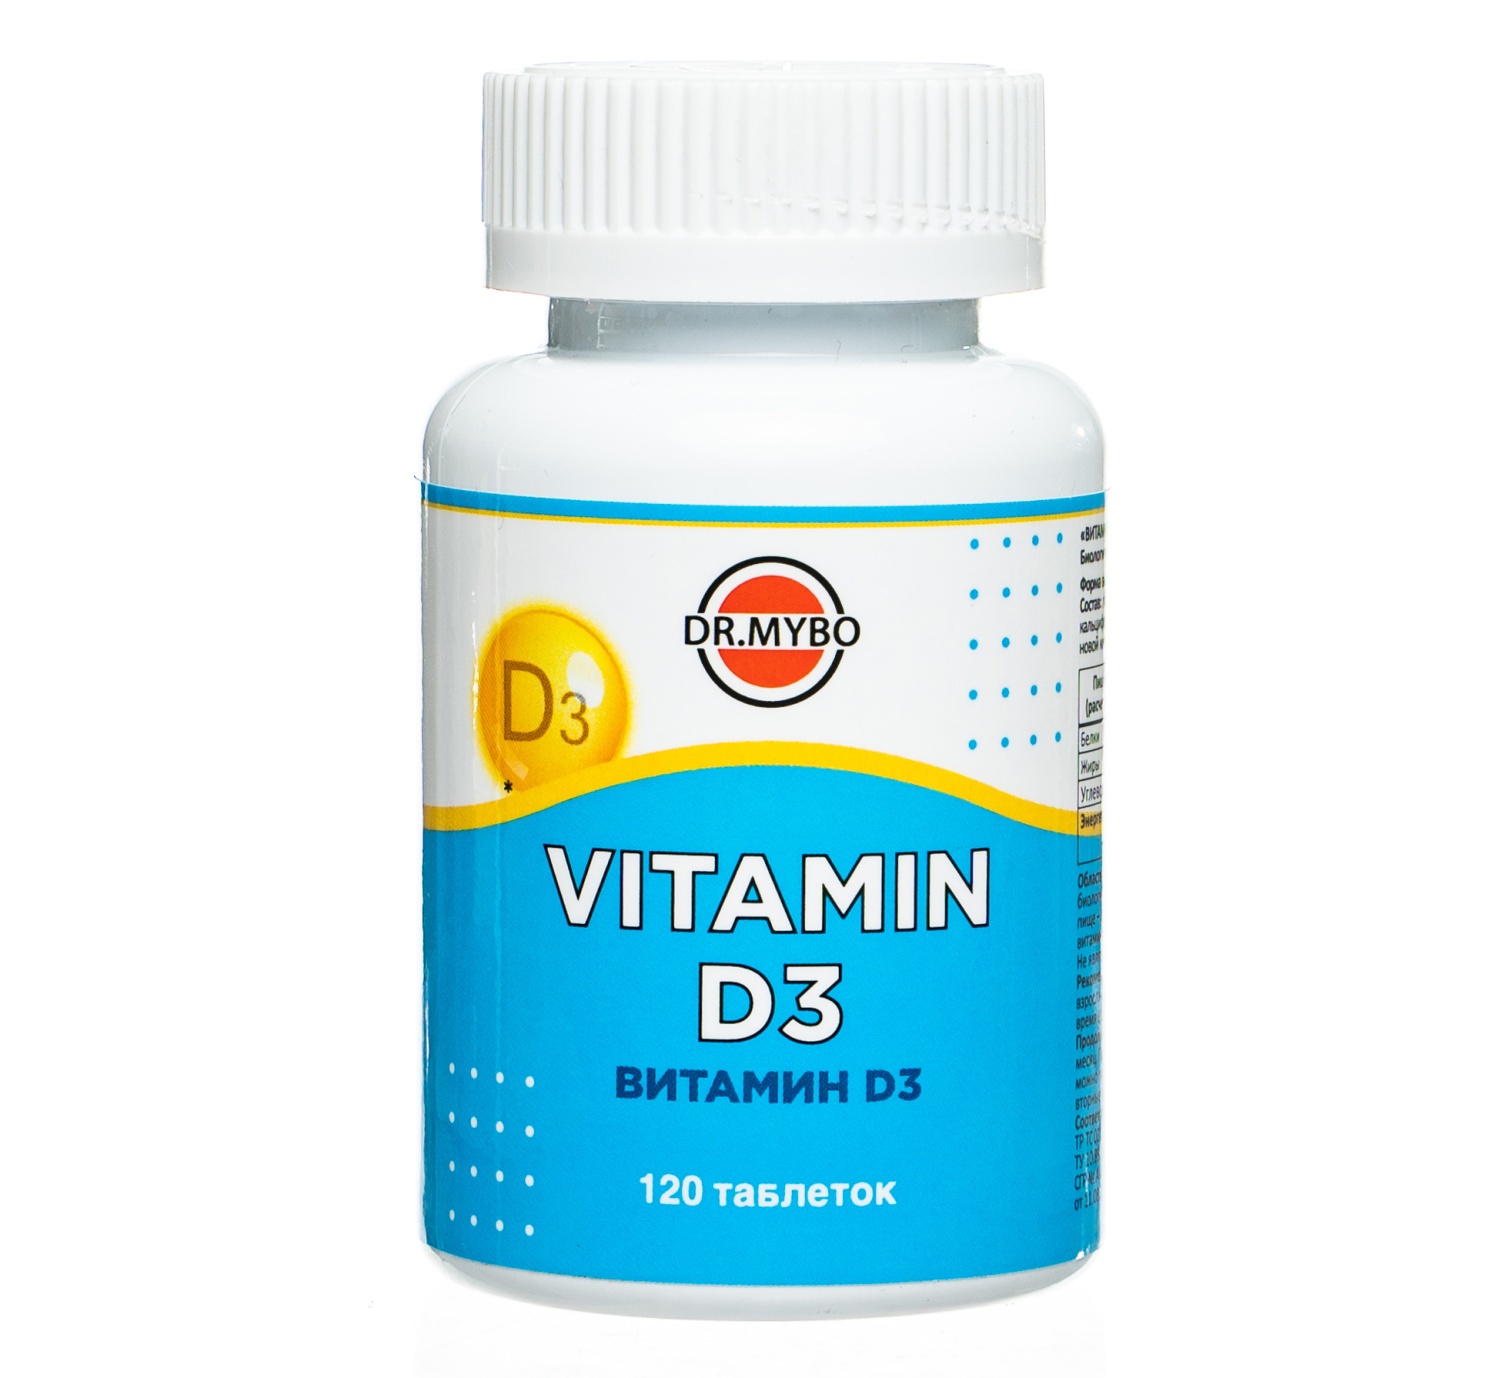 Витамин D3 600 ME для зрения, мышц, кожи и волос, улучшения иммунитета и метаболизма Dr.Mybo, 120 таблеток